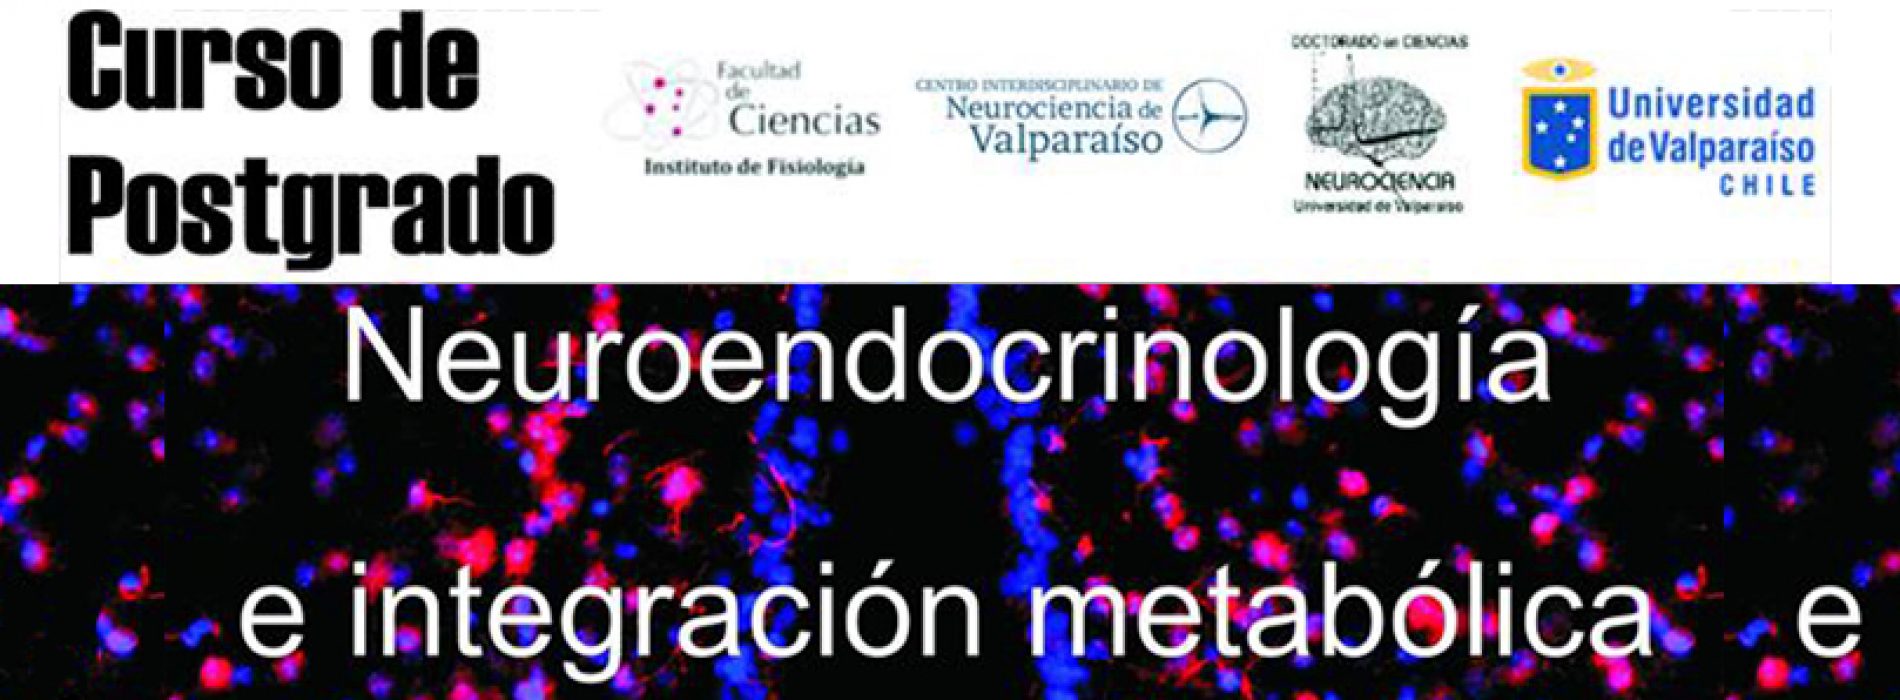 Curso de Postgrado: «Neuroendocrinología e integración metabólica»